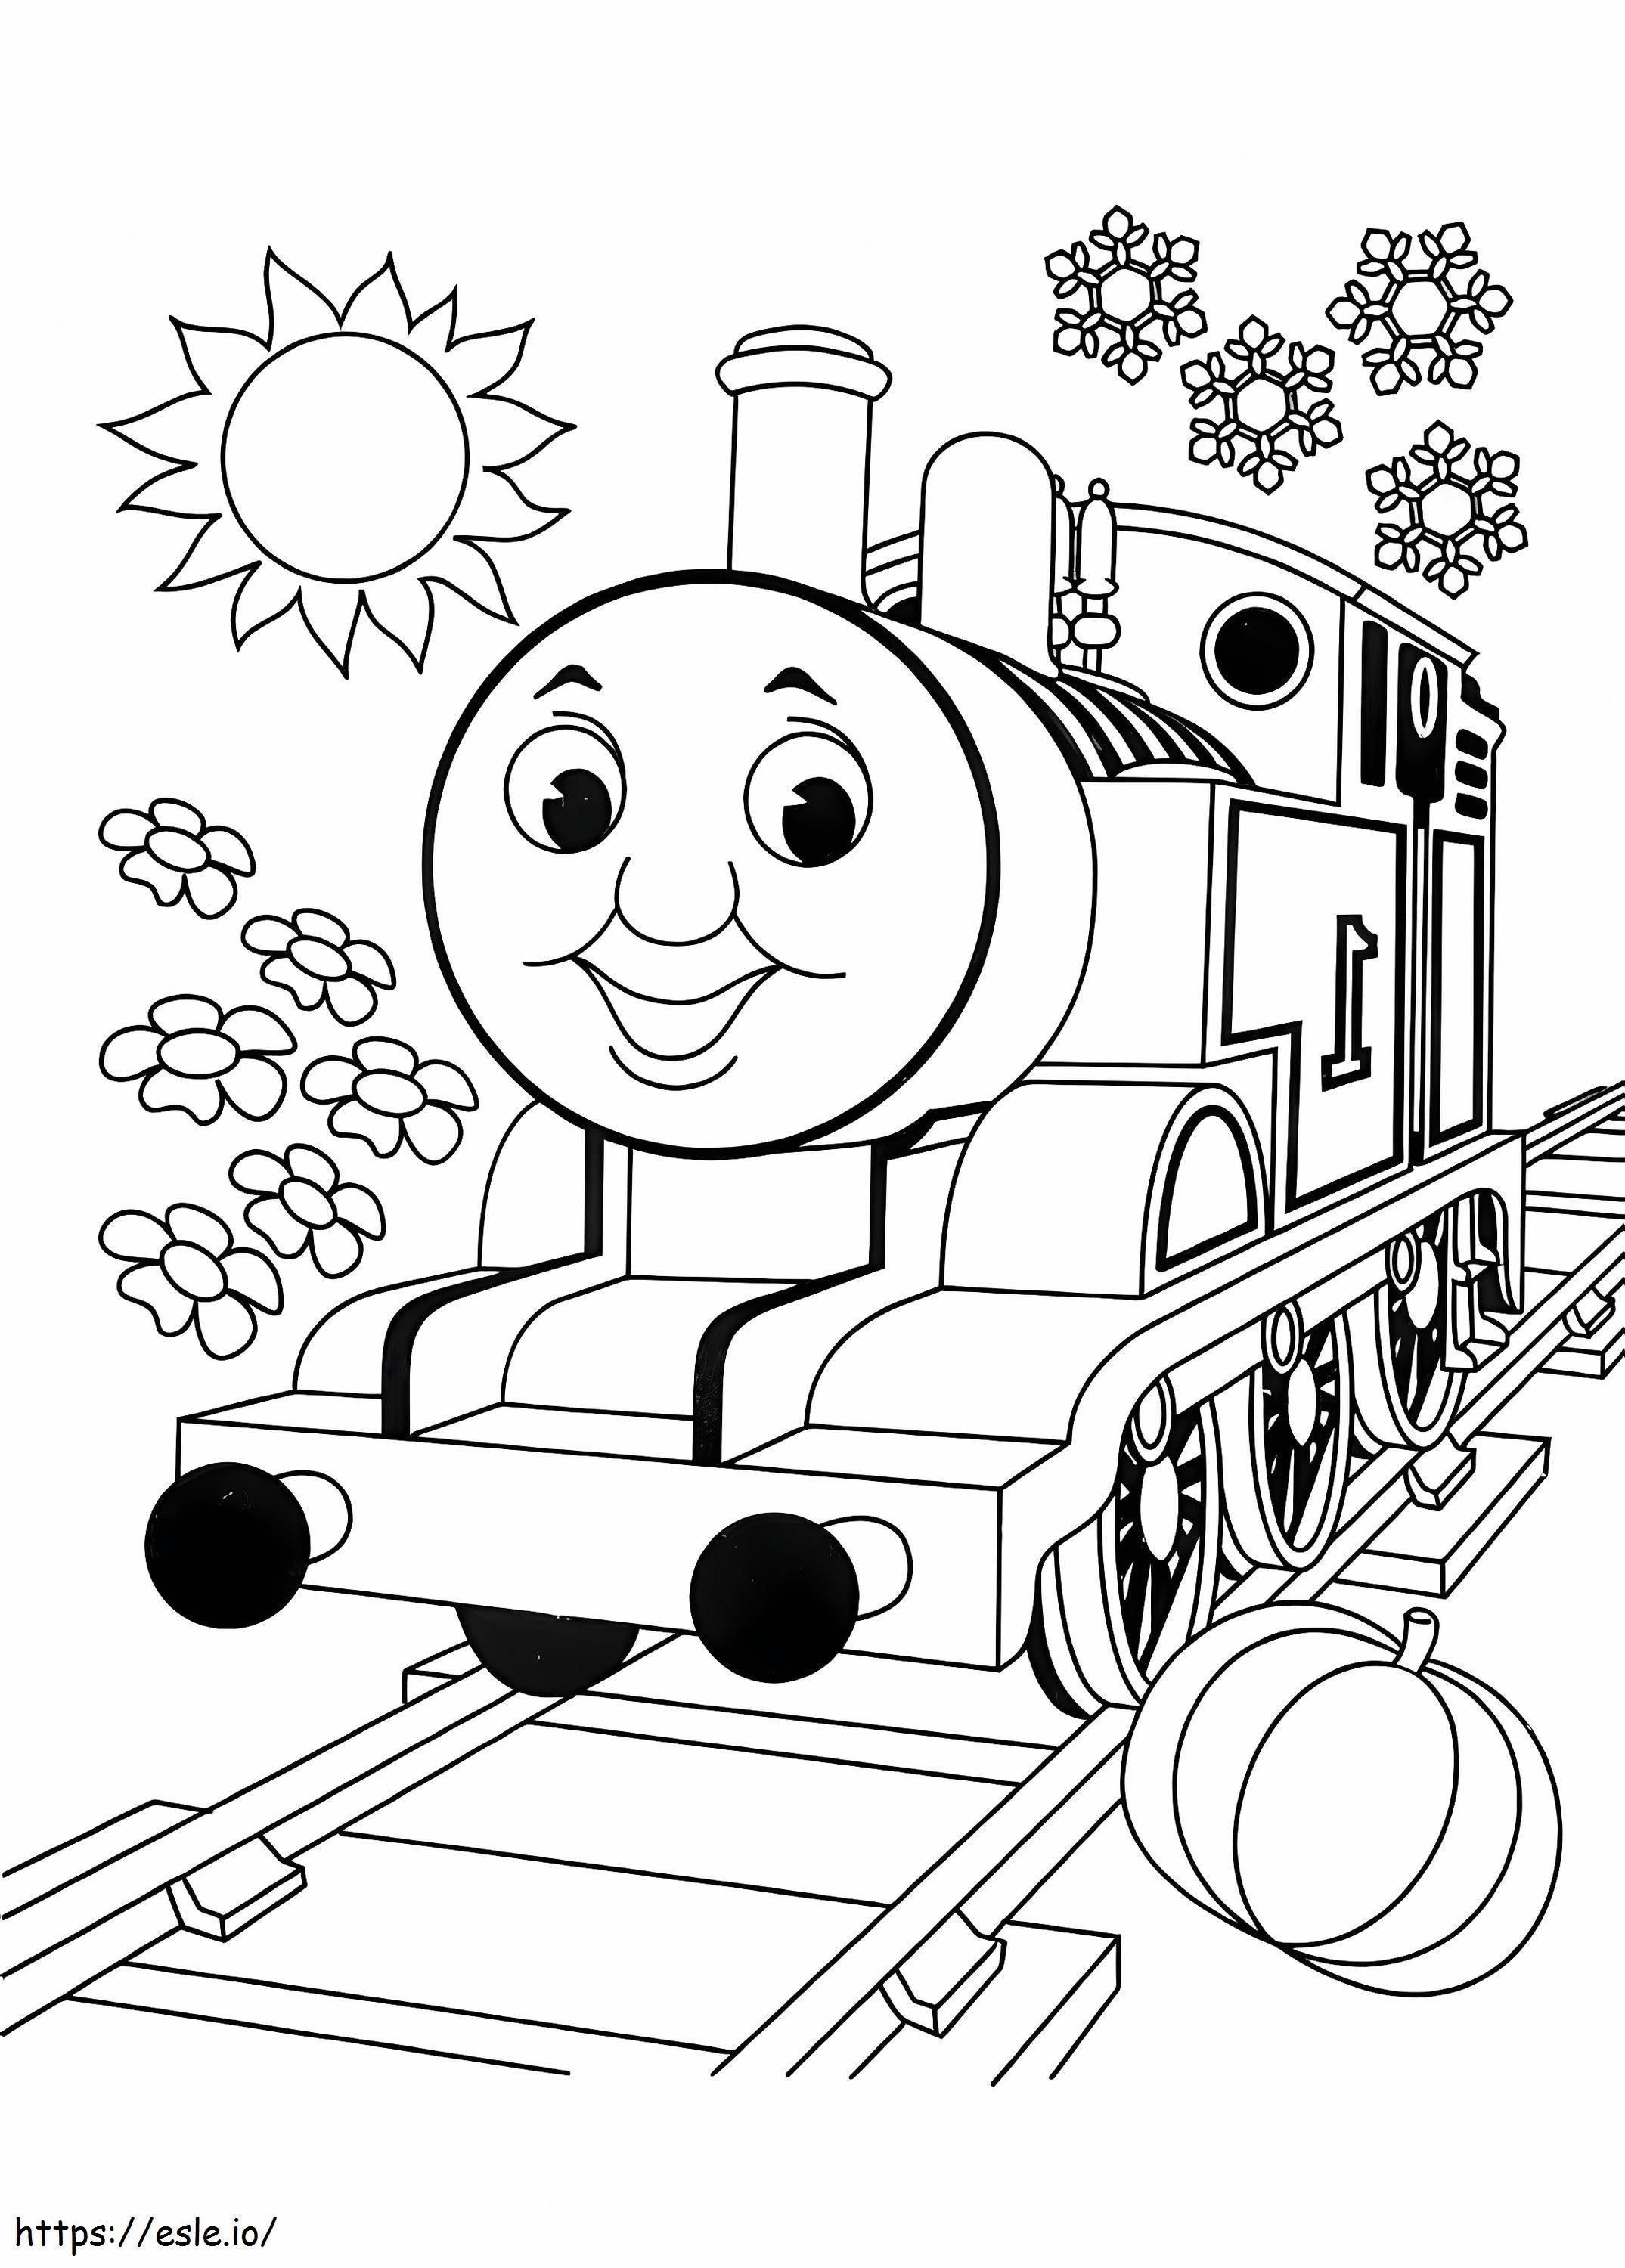 Thomas A vonat színező oldala 6 kifestő